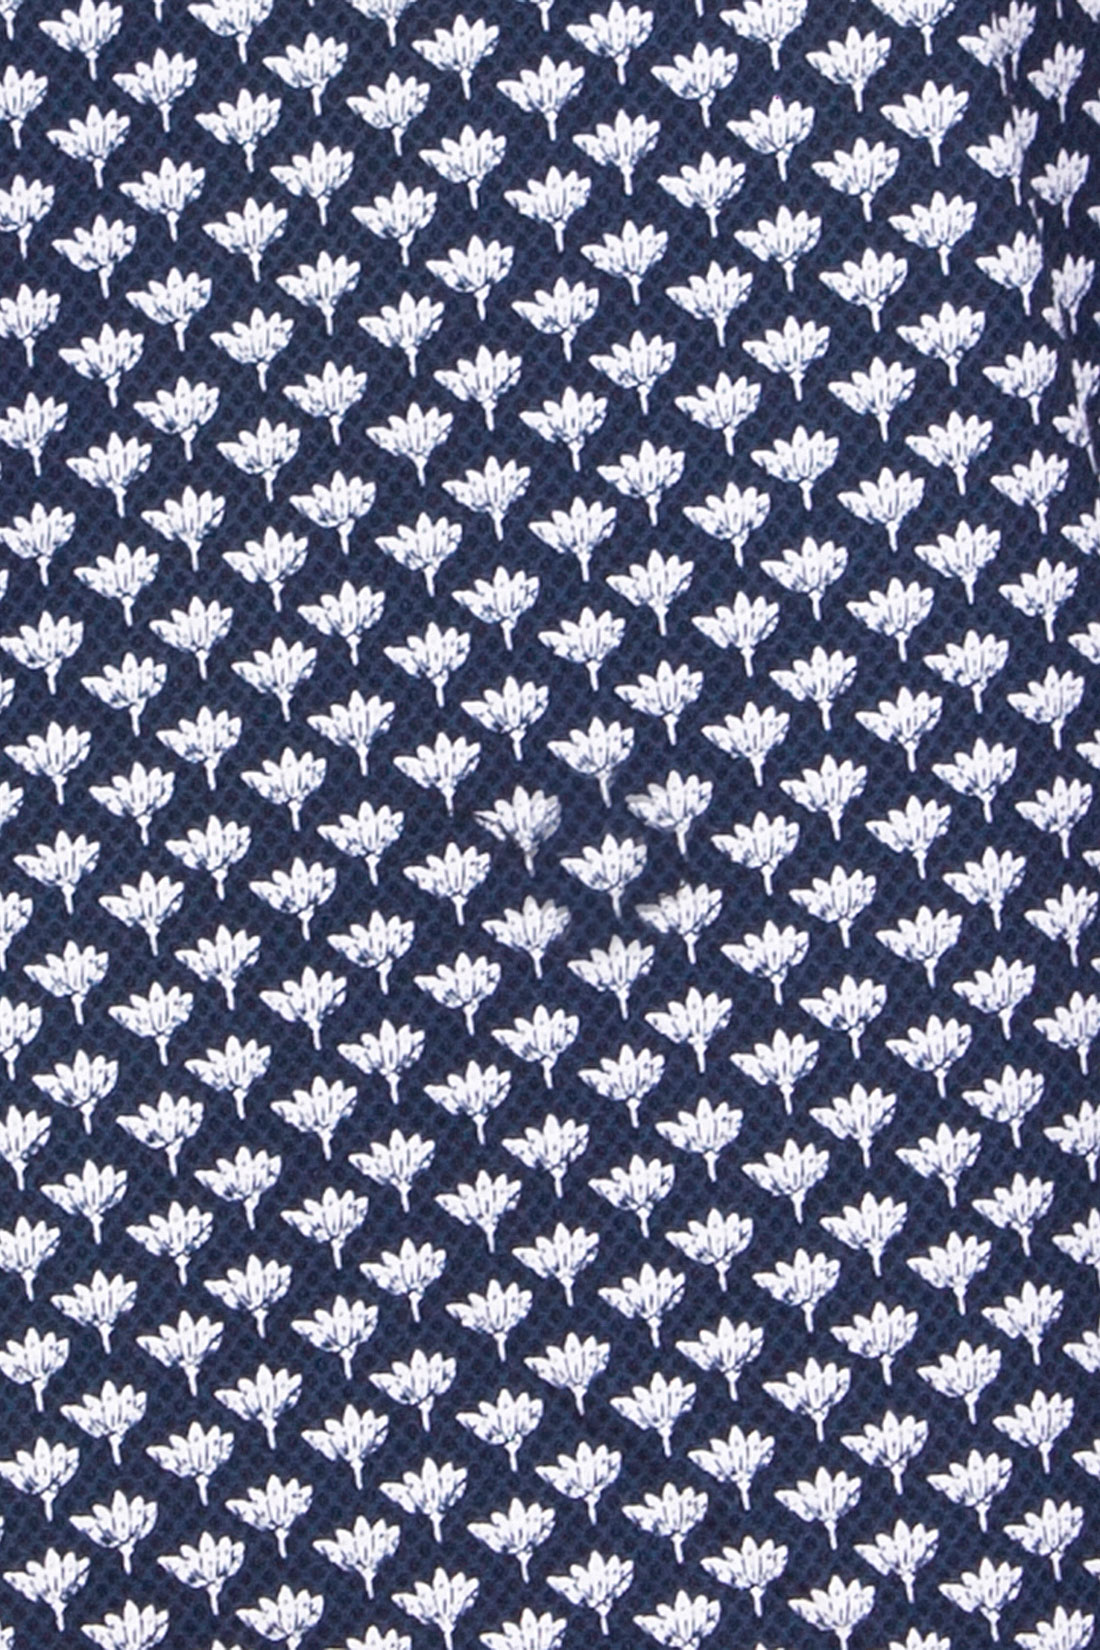 Юбка из материала с принтом (арт. baon B477008), размер XS, цвет dark navy printed#синий Юбка из материала с принтом (арт. baon B477008) - фото 3